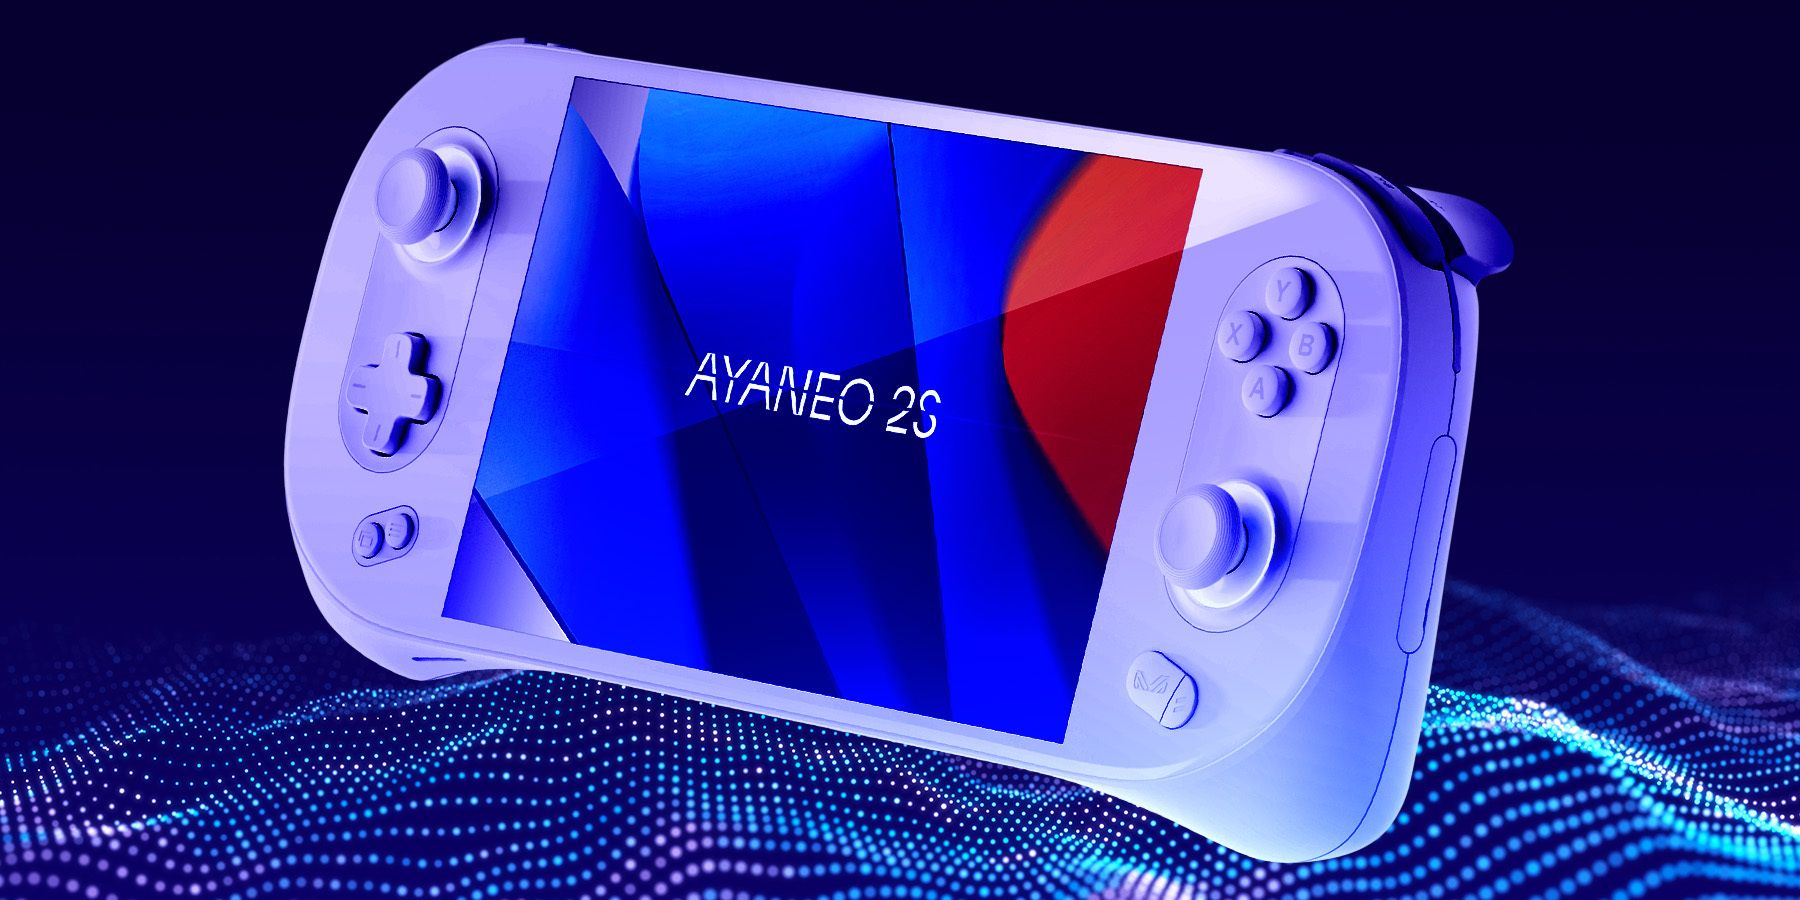 ayaneo 2s gaming handheld